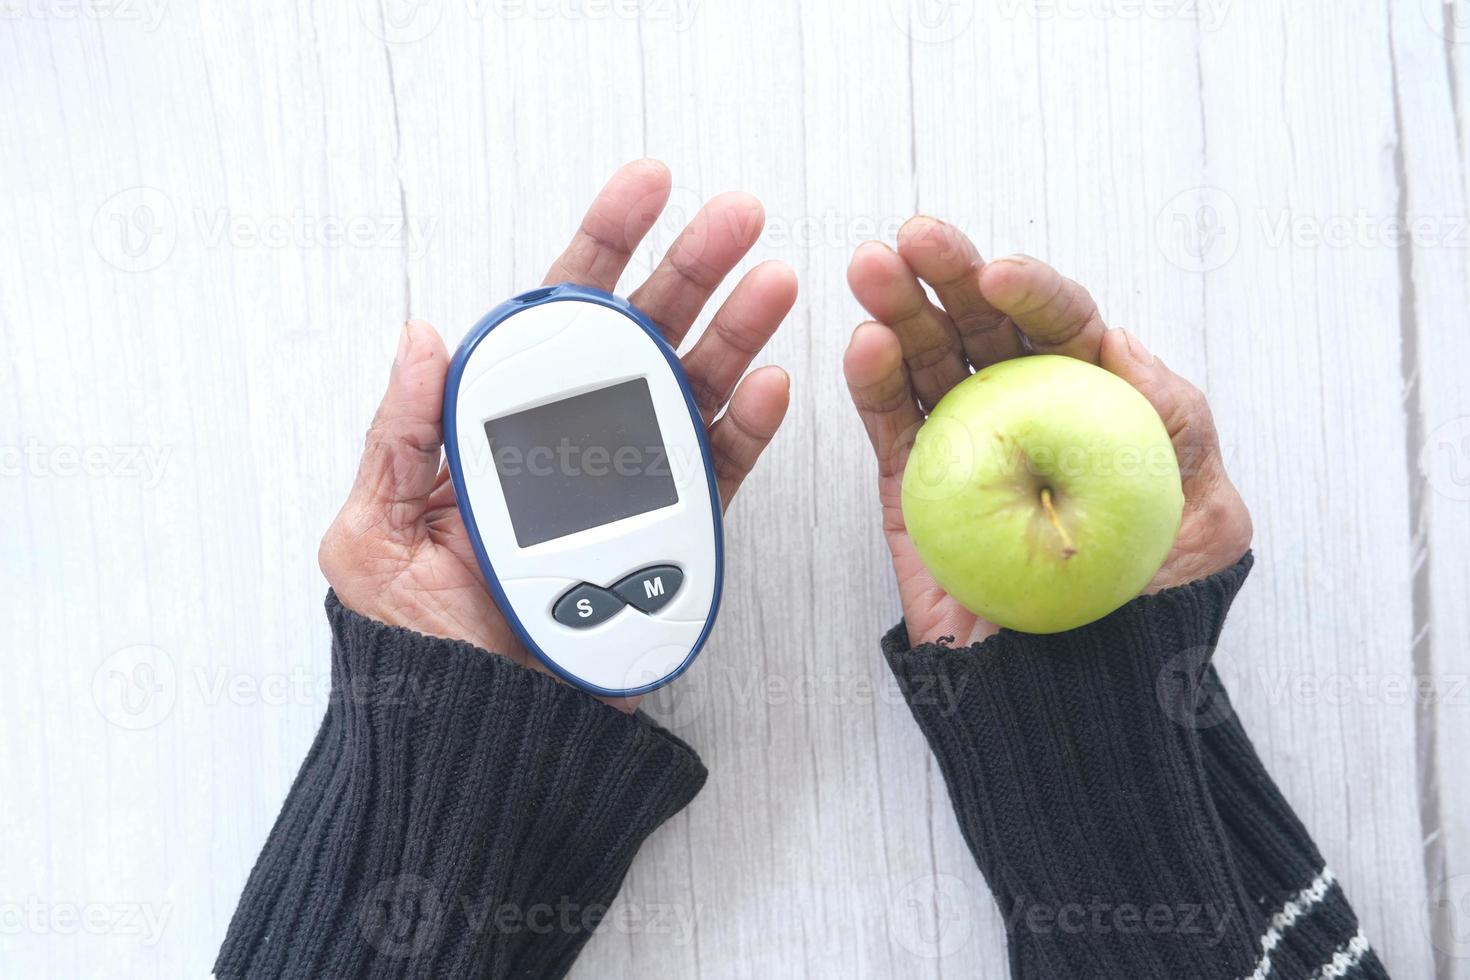 äldre kvinna som håller diabetiska mätverktyg och äpple på träbord foto